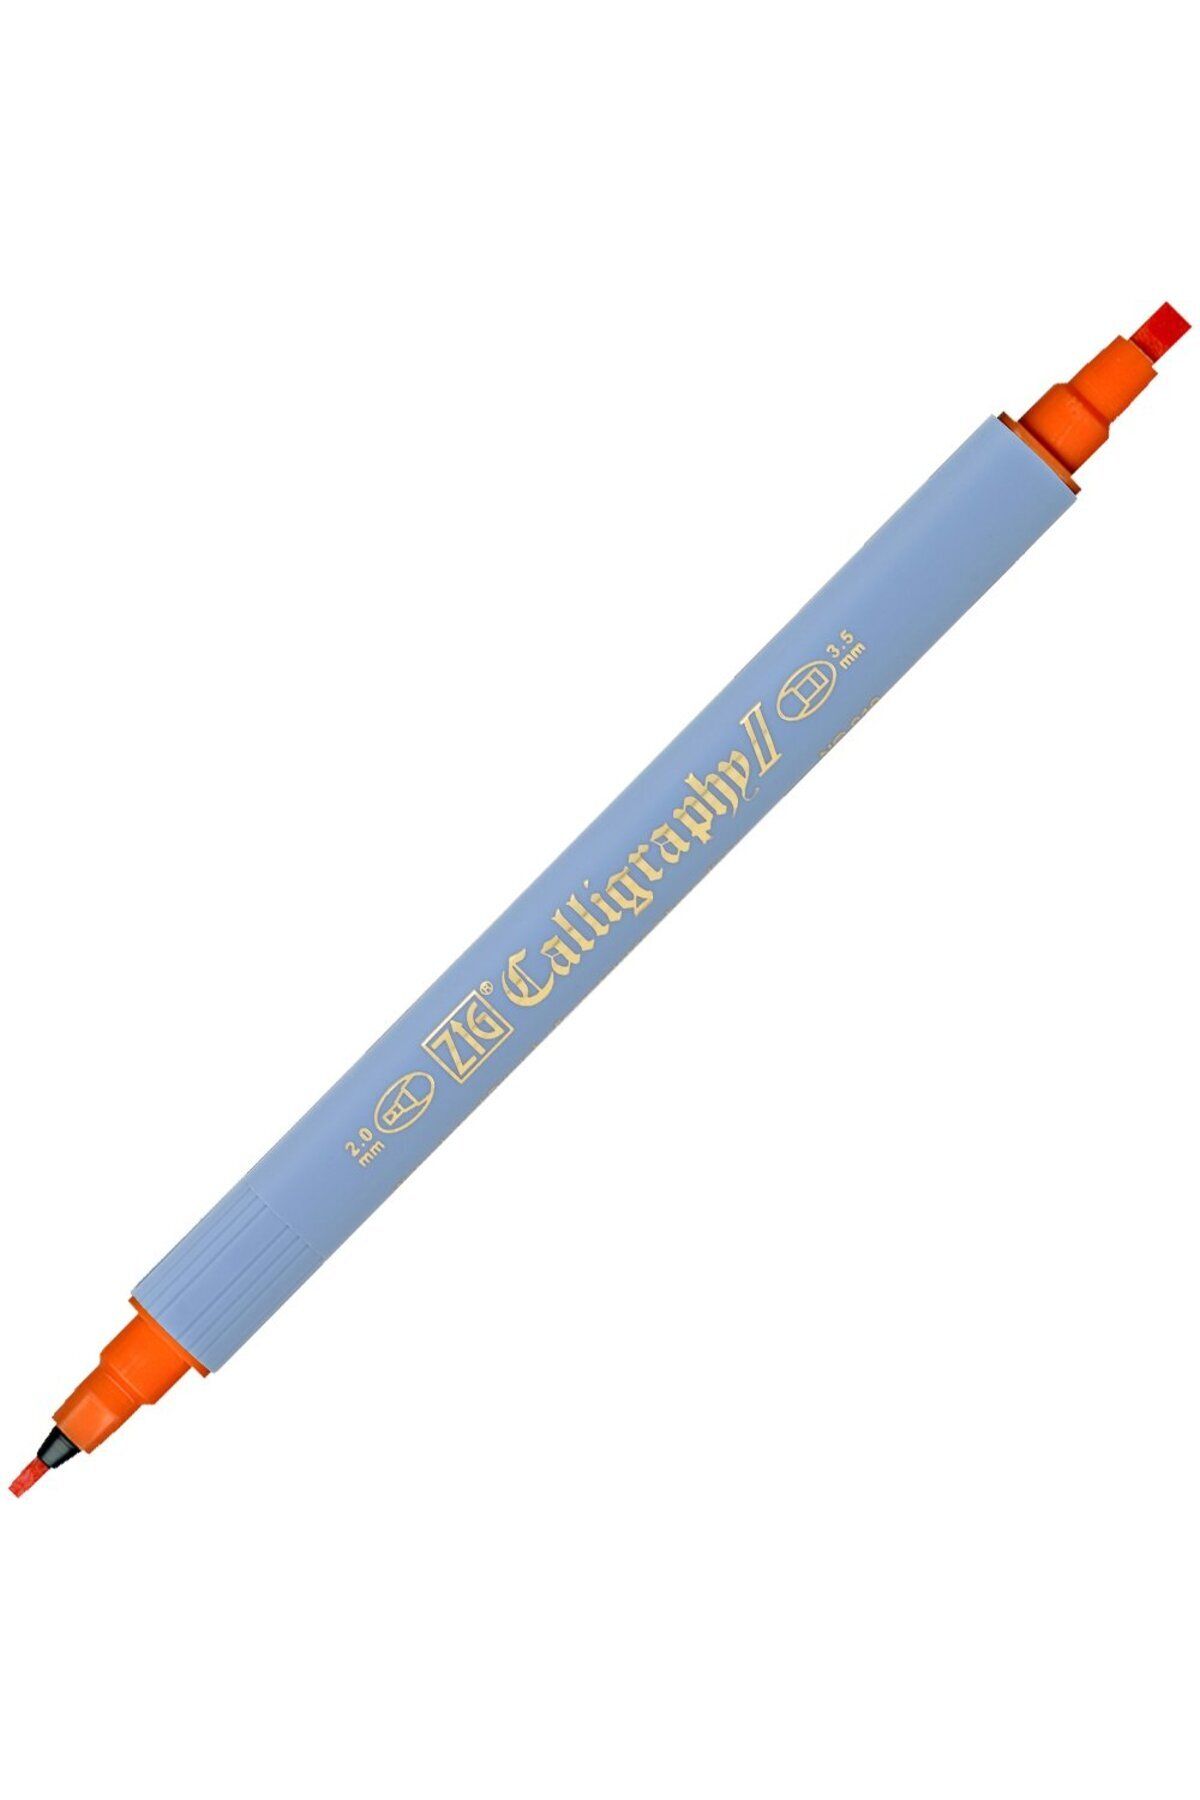 Zig Kaligrafi Kalemi Çift Uçlu 2mm + 3.5mm Tc-3100 070 Orange